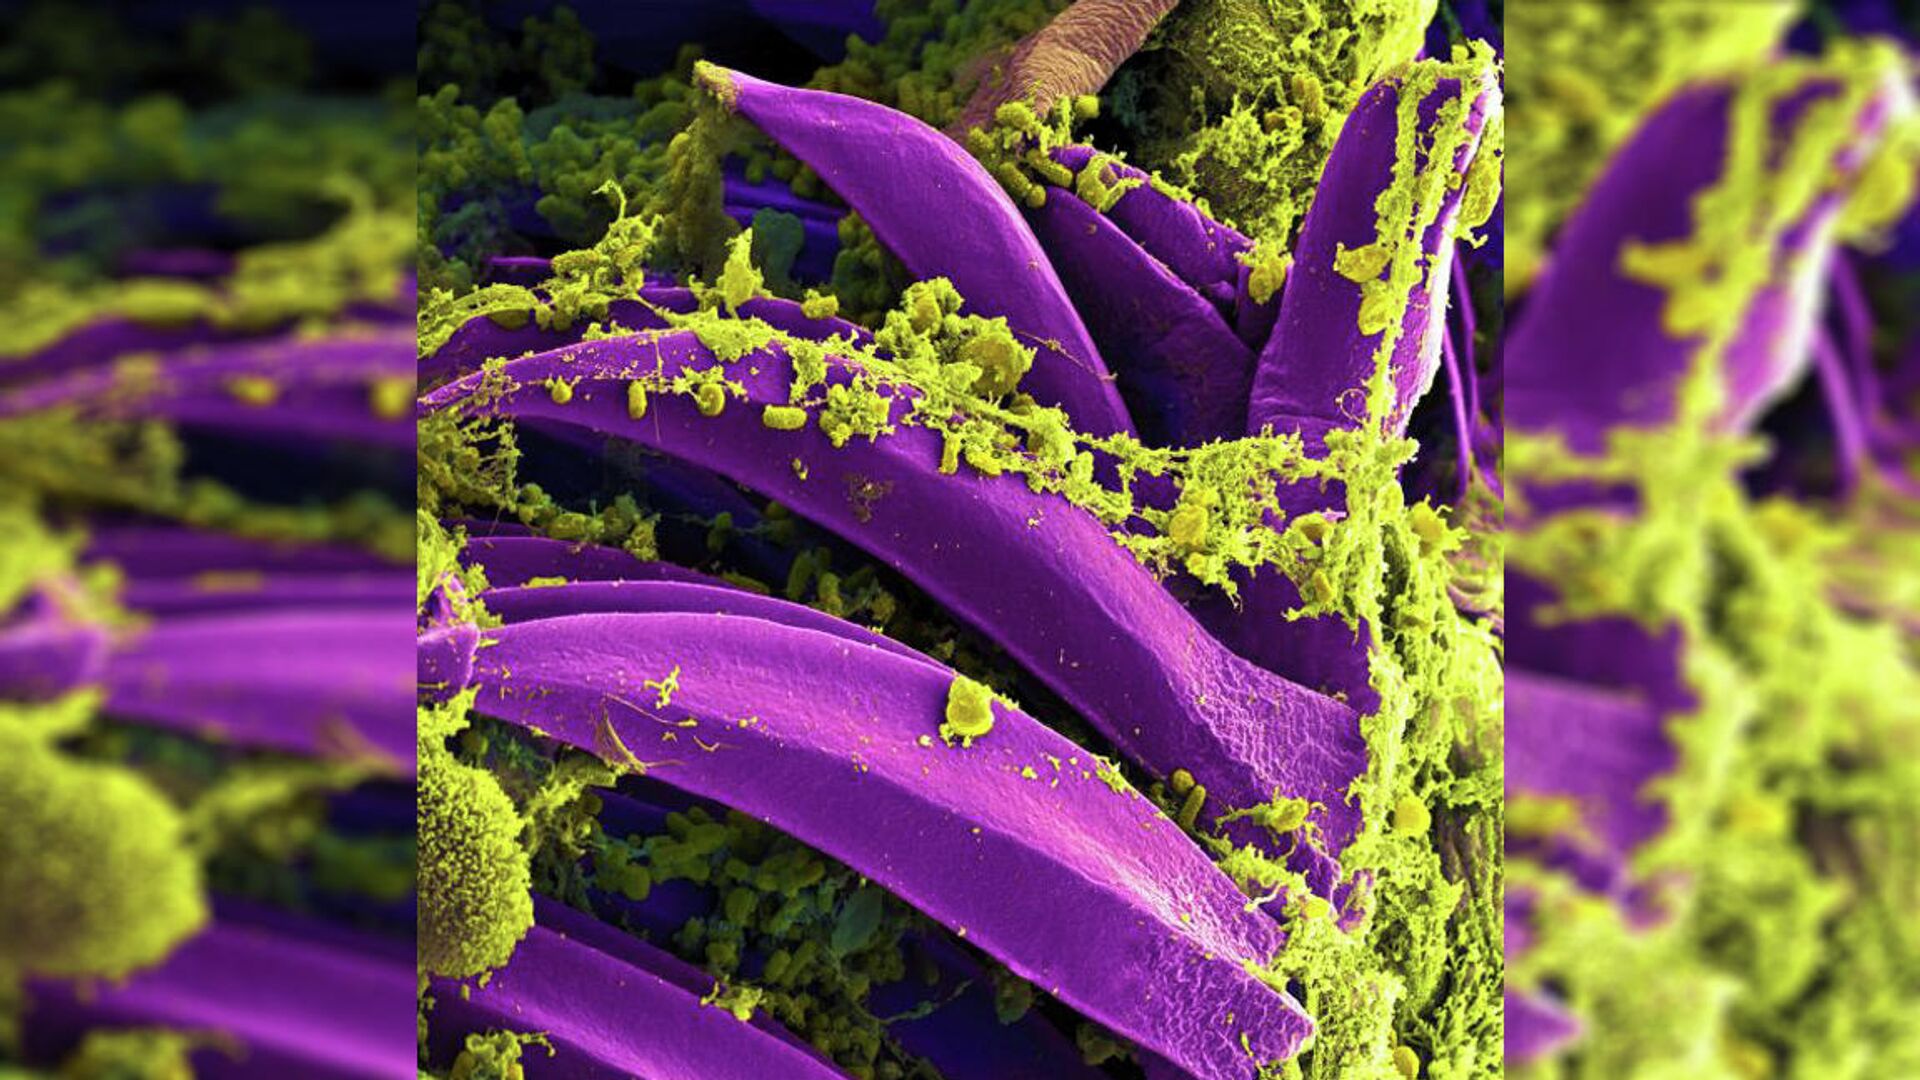 Чумной микроб опутал слизистую преджелудка блохи Xenopsylla cheopis